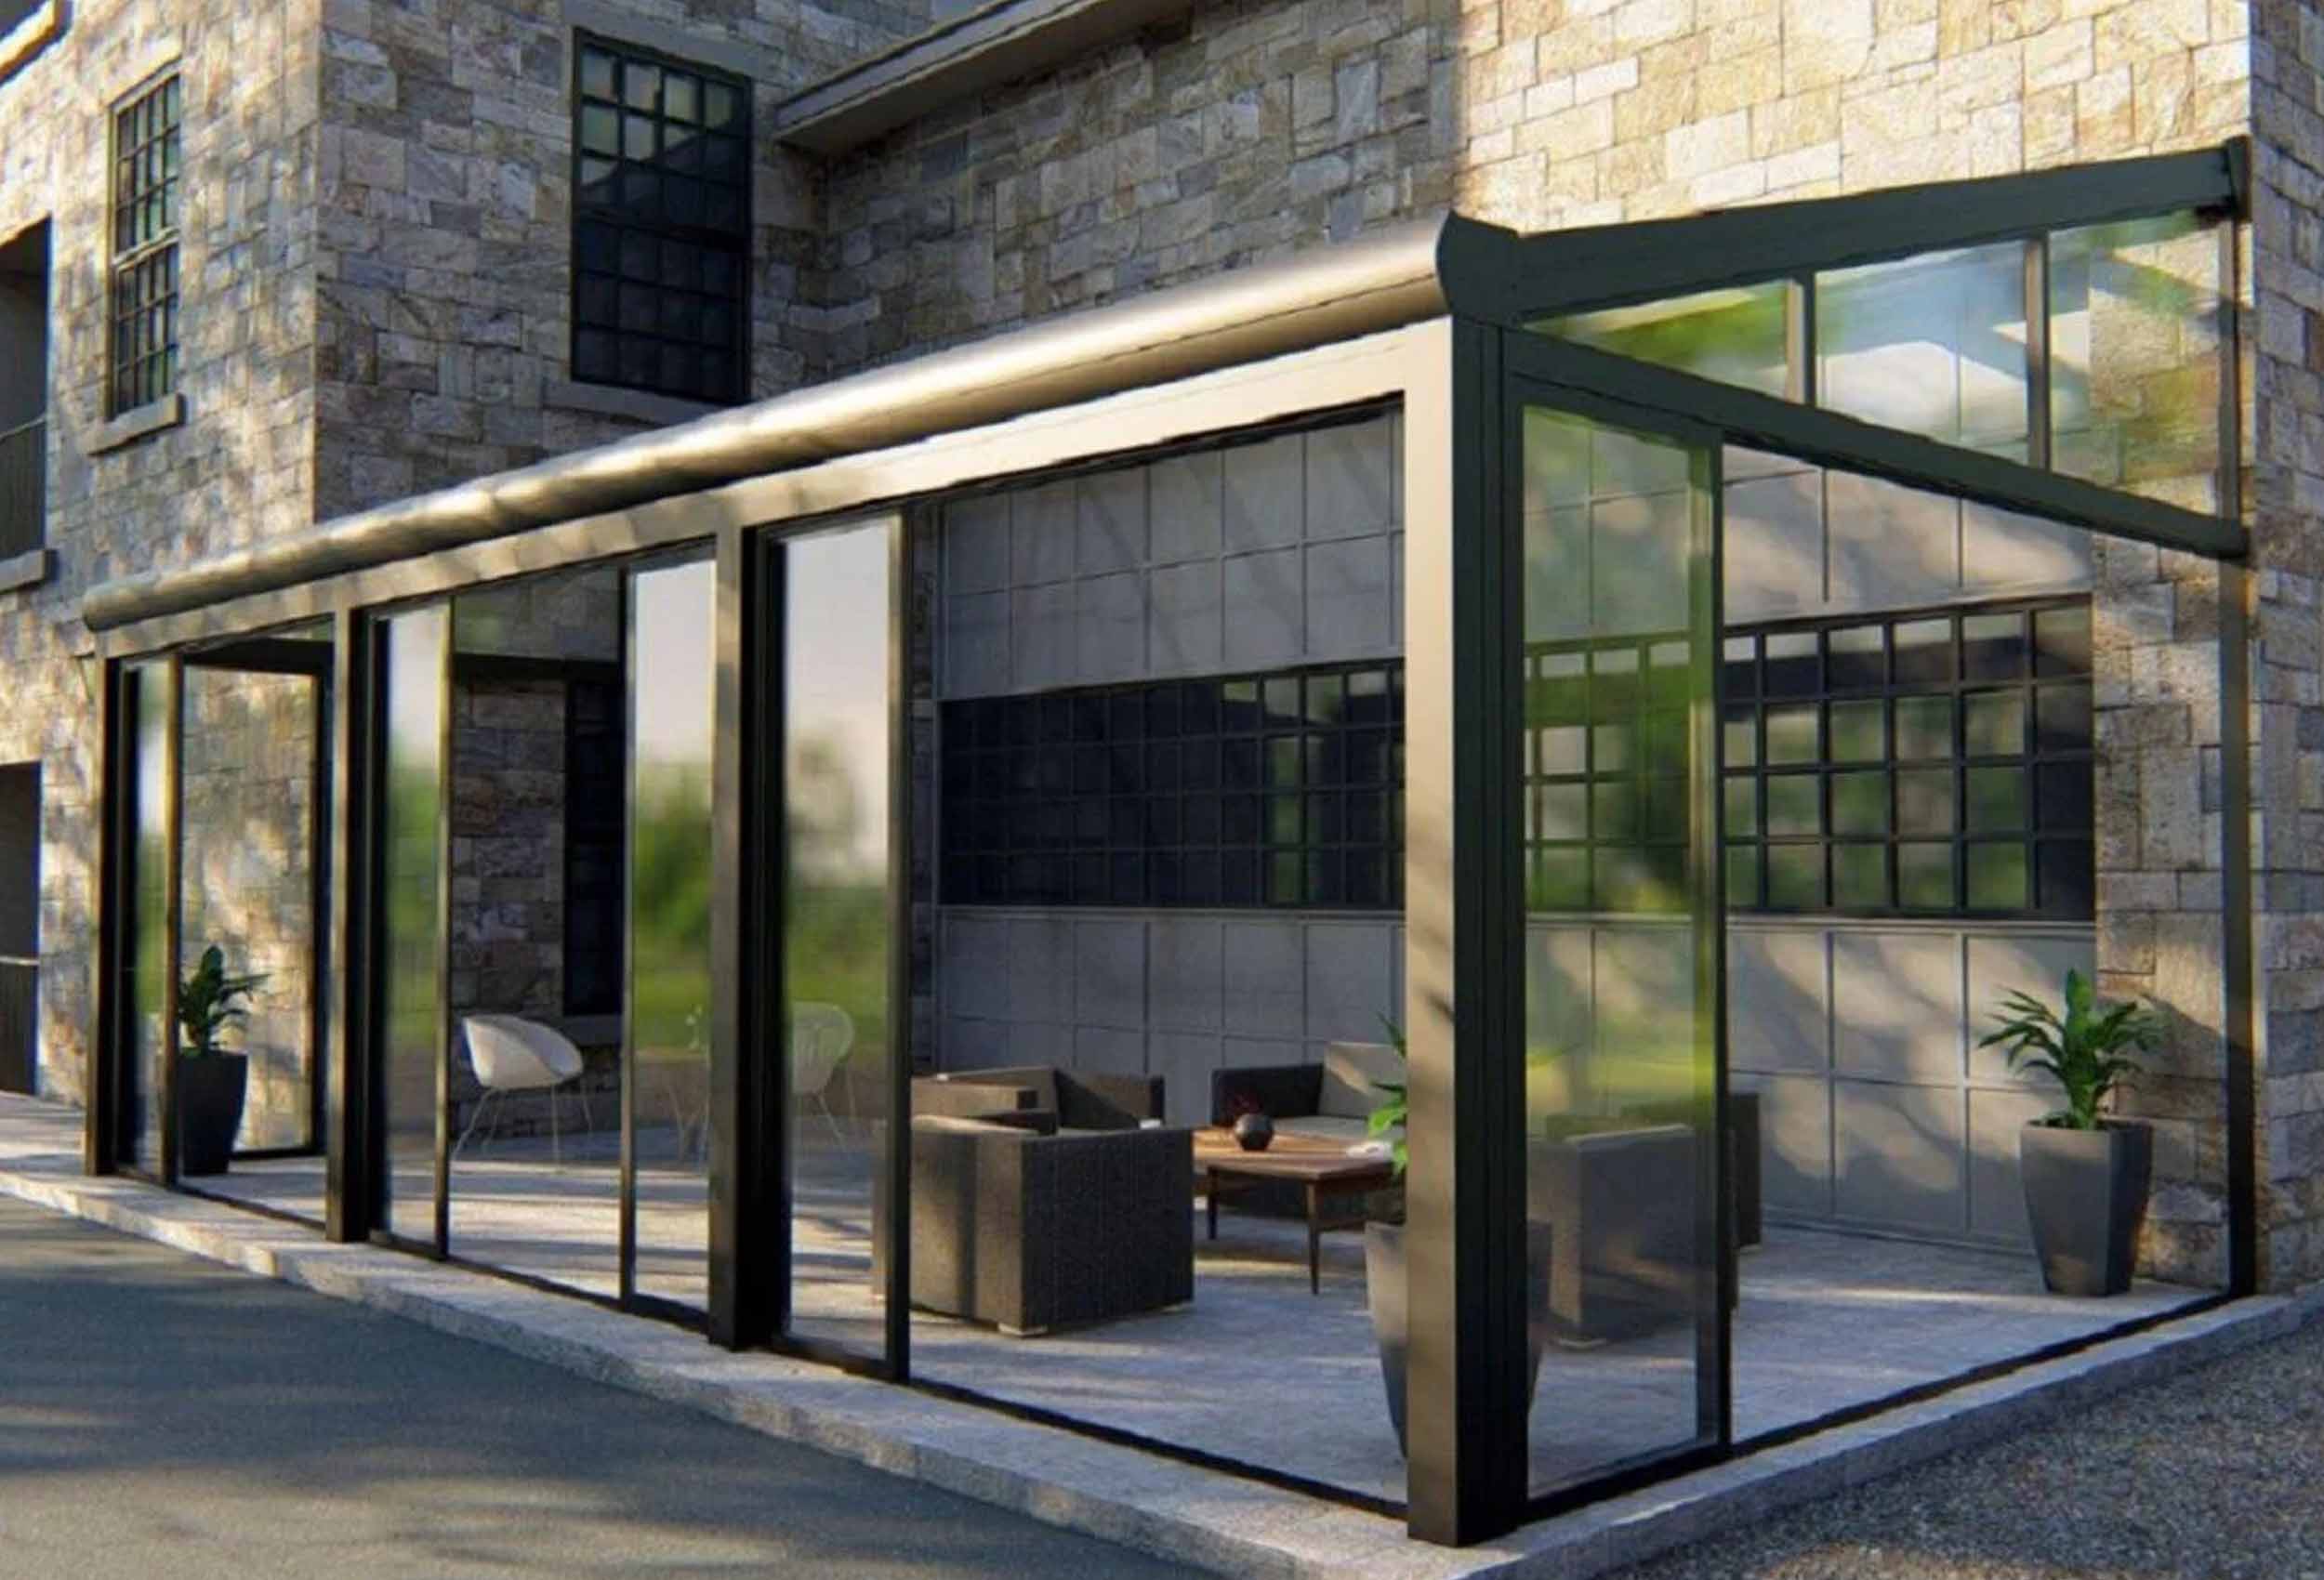 verande-serre-bioclimatiche-fad-studio-architettura-interior-exterior-design-forniti2